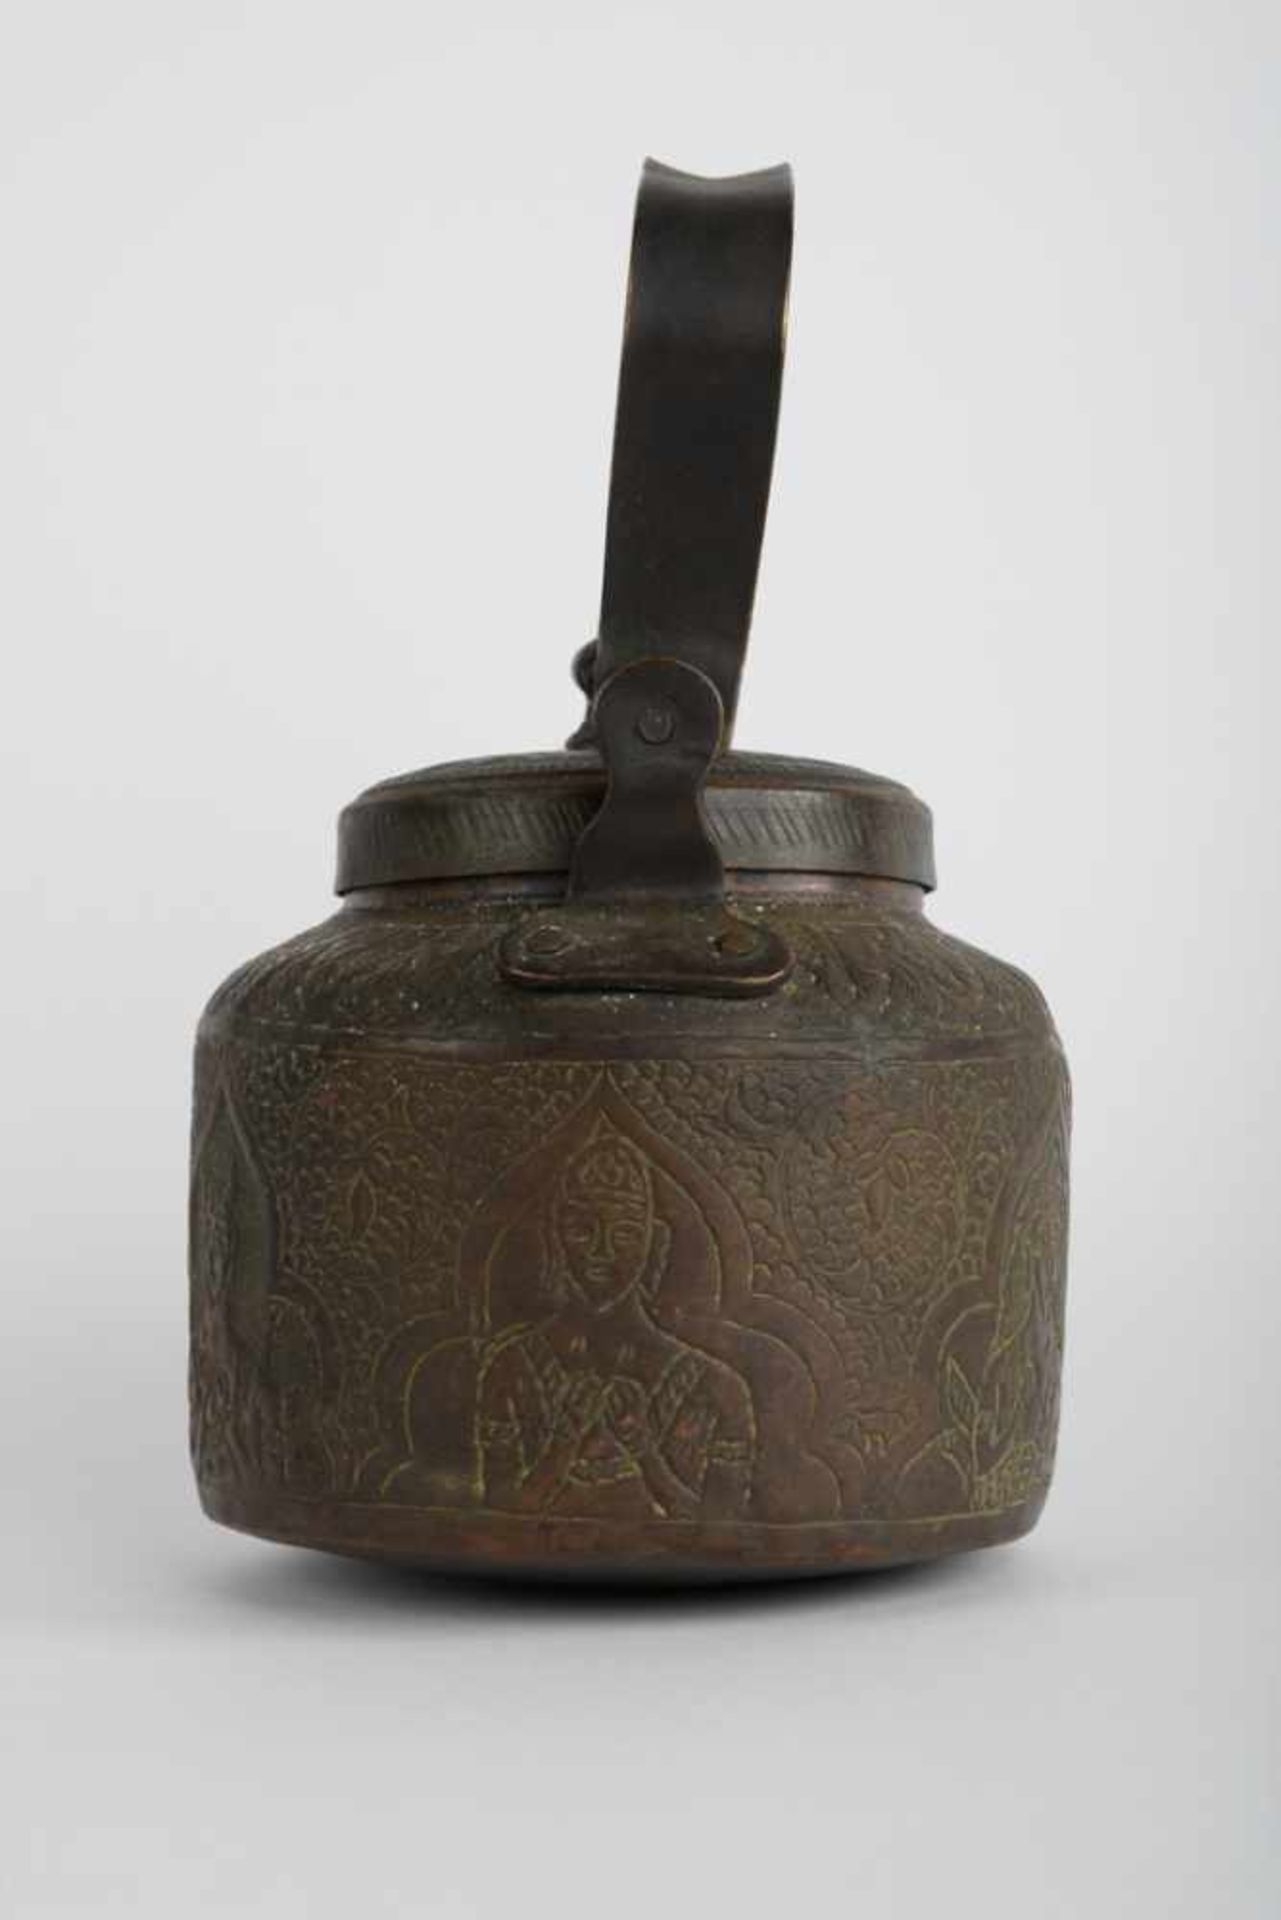 Teekessel. Asien / Indien. Bronze, umlaufend mit traditionellem Asia-Dekor graviert. Maße ca. 19 x - Image 15 of 21